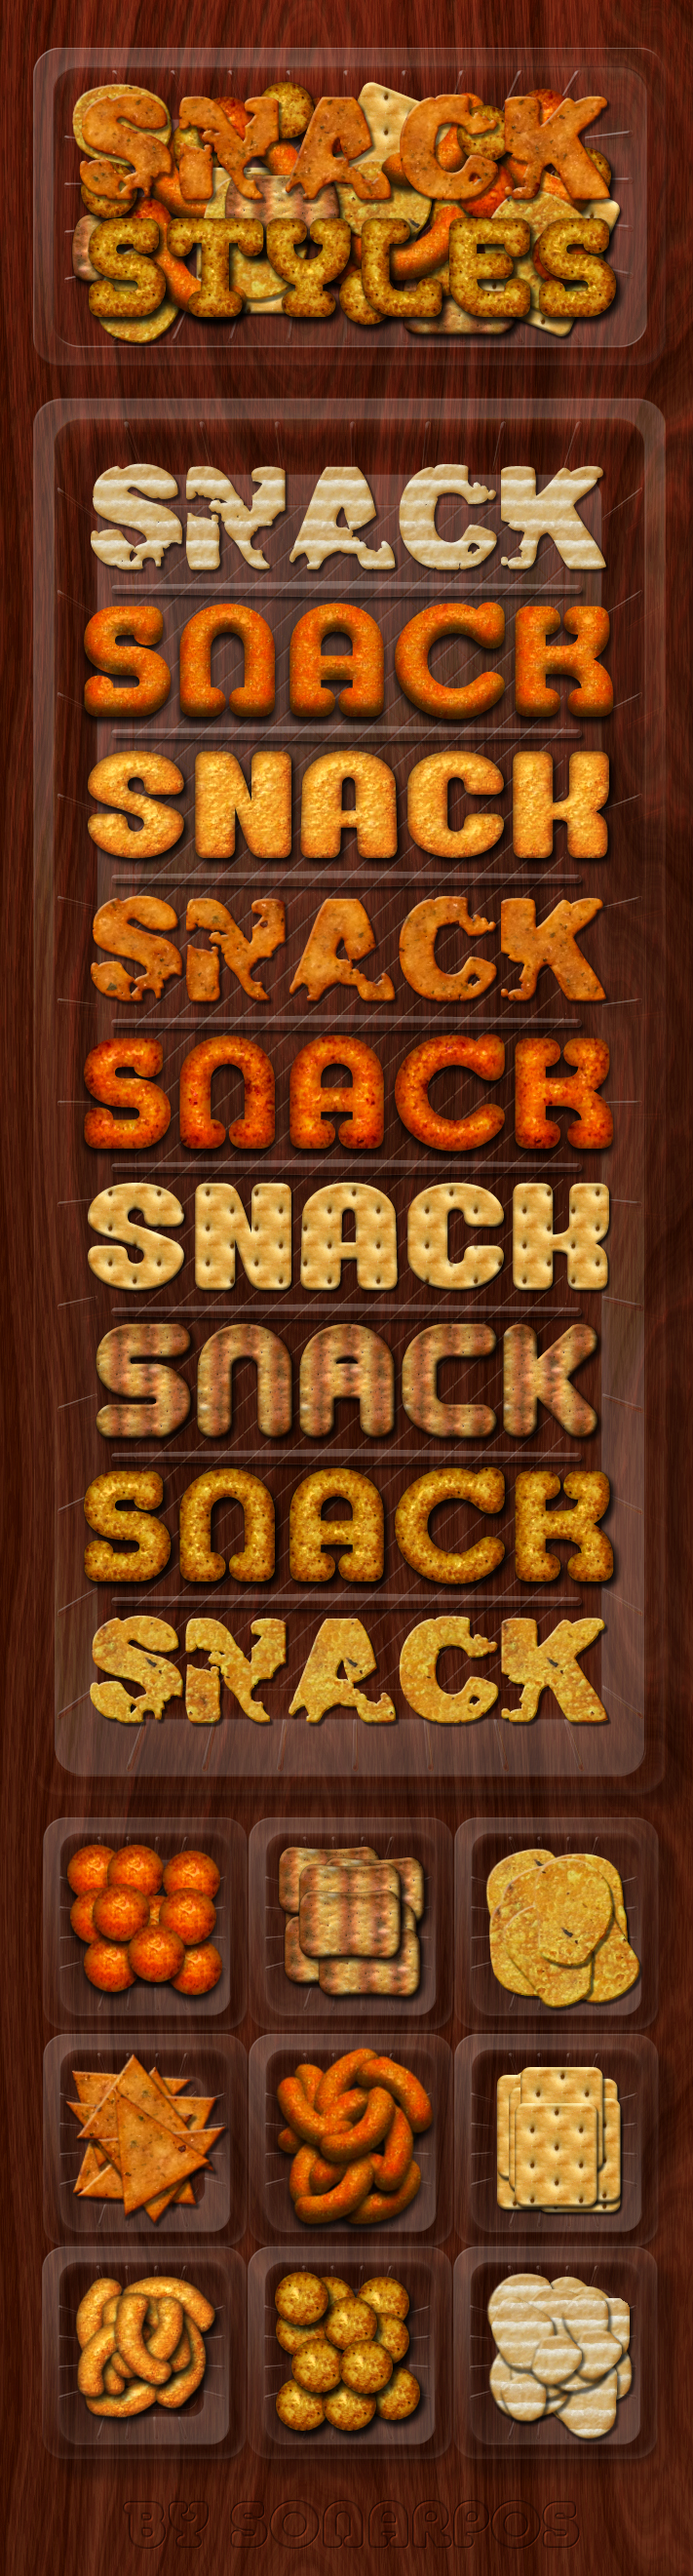 Snack Styles